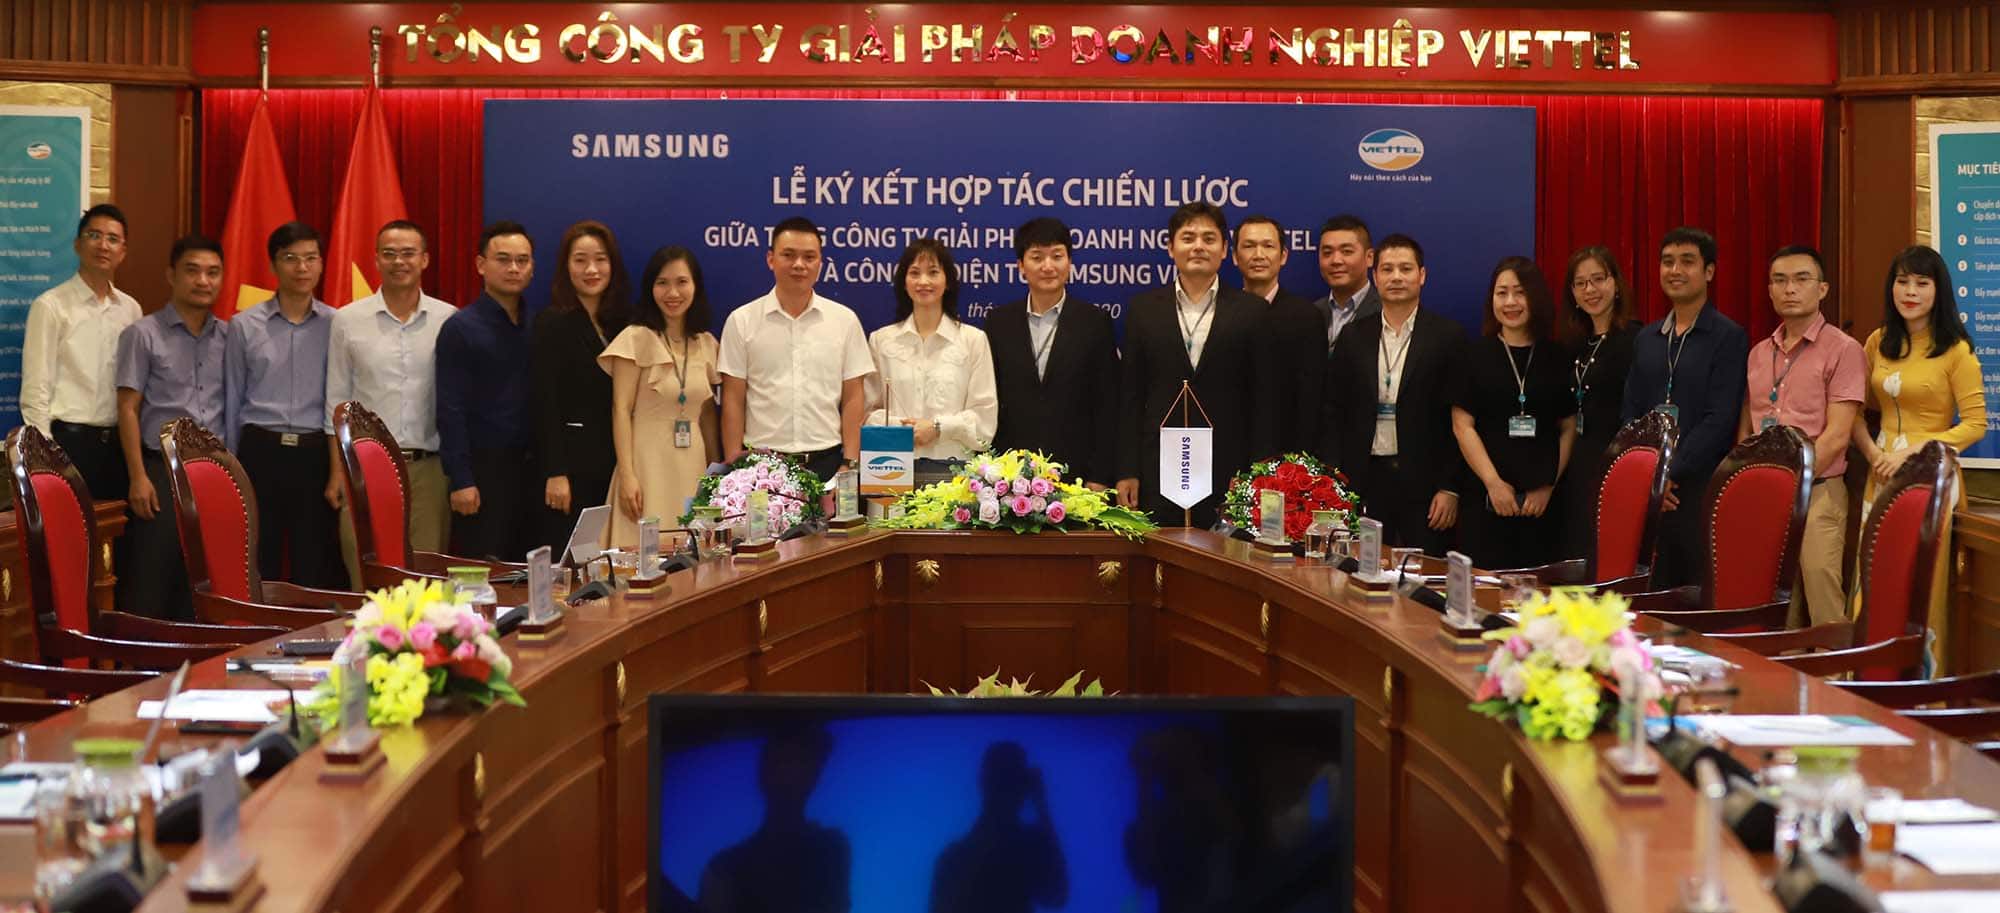 Tổng Công ty Giải pháp Doanh nghiệp Viettel và Samsung chính thức ký kết hợp tác chiến lược